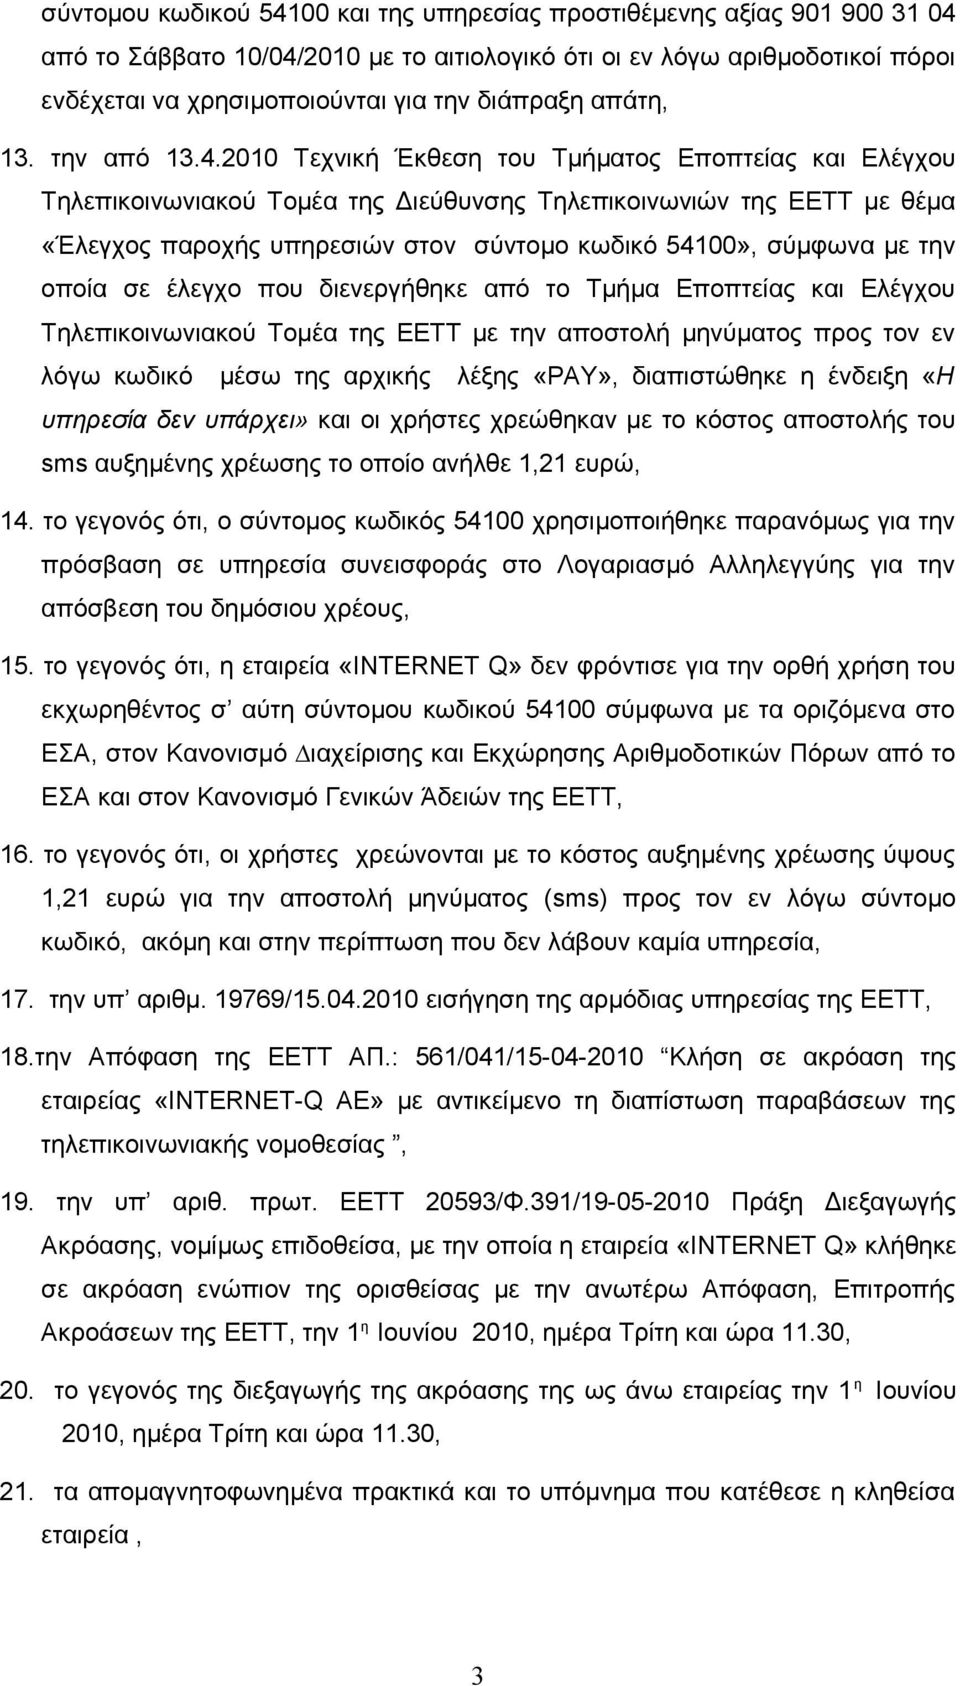 2010 Τεχνική Έκθεση του Τμήματος Εποπτείας και Ελέγχου Τηλεπικοινωνιακού Τομέα της Διεύθυνσης Τηλεπικοινωνιών της ΕΕΤΤ με θέμα «Έλεγχος παροχής υπηρεσιών στον σύντομο κωδικό 54100», σύμφωνα με την